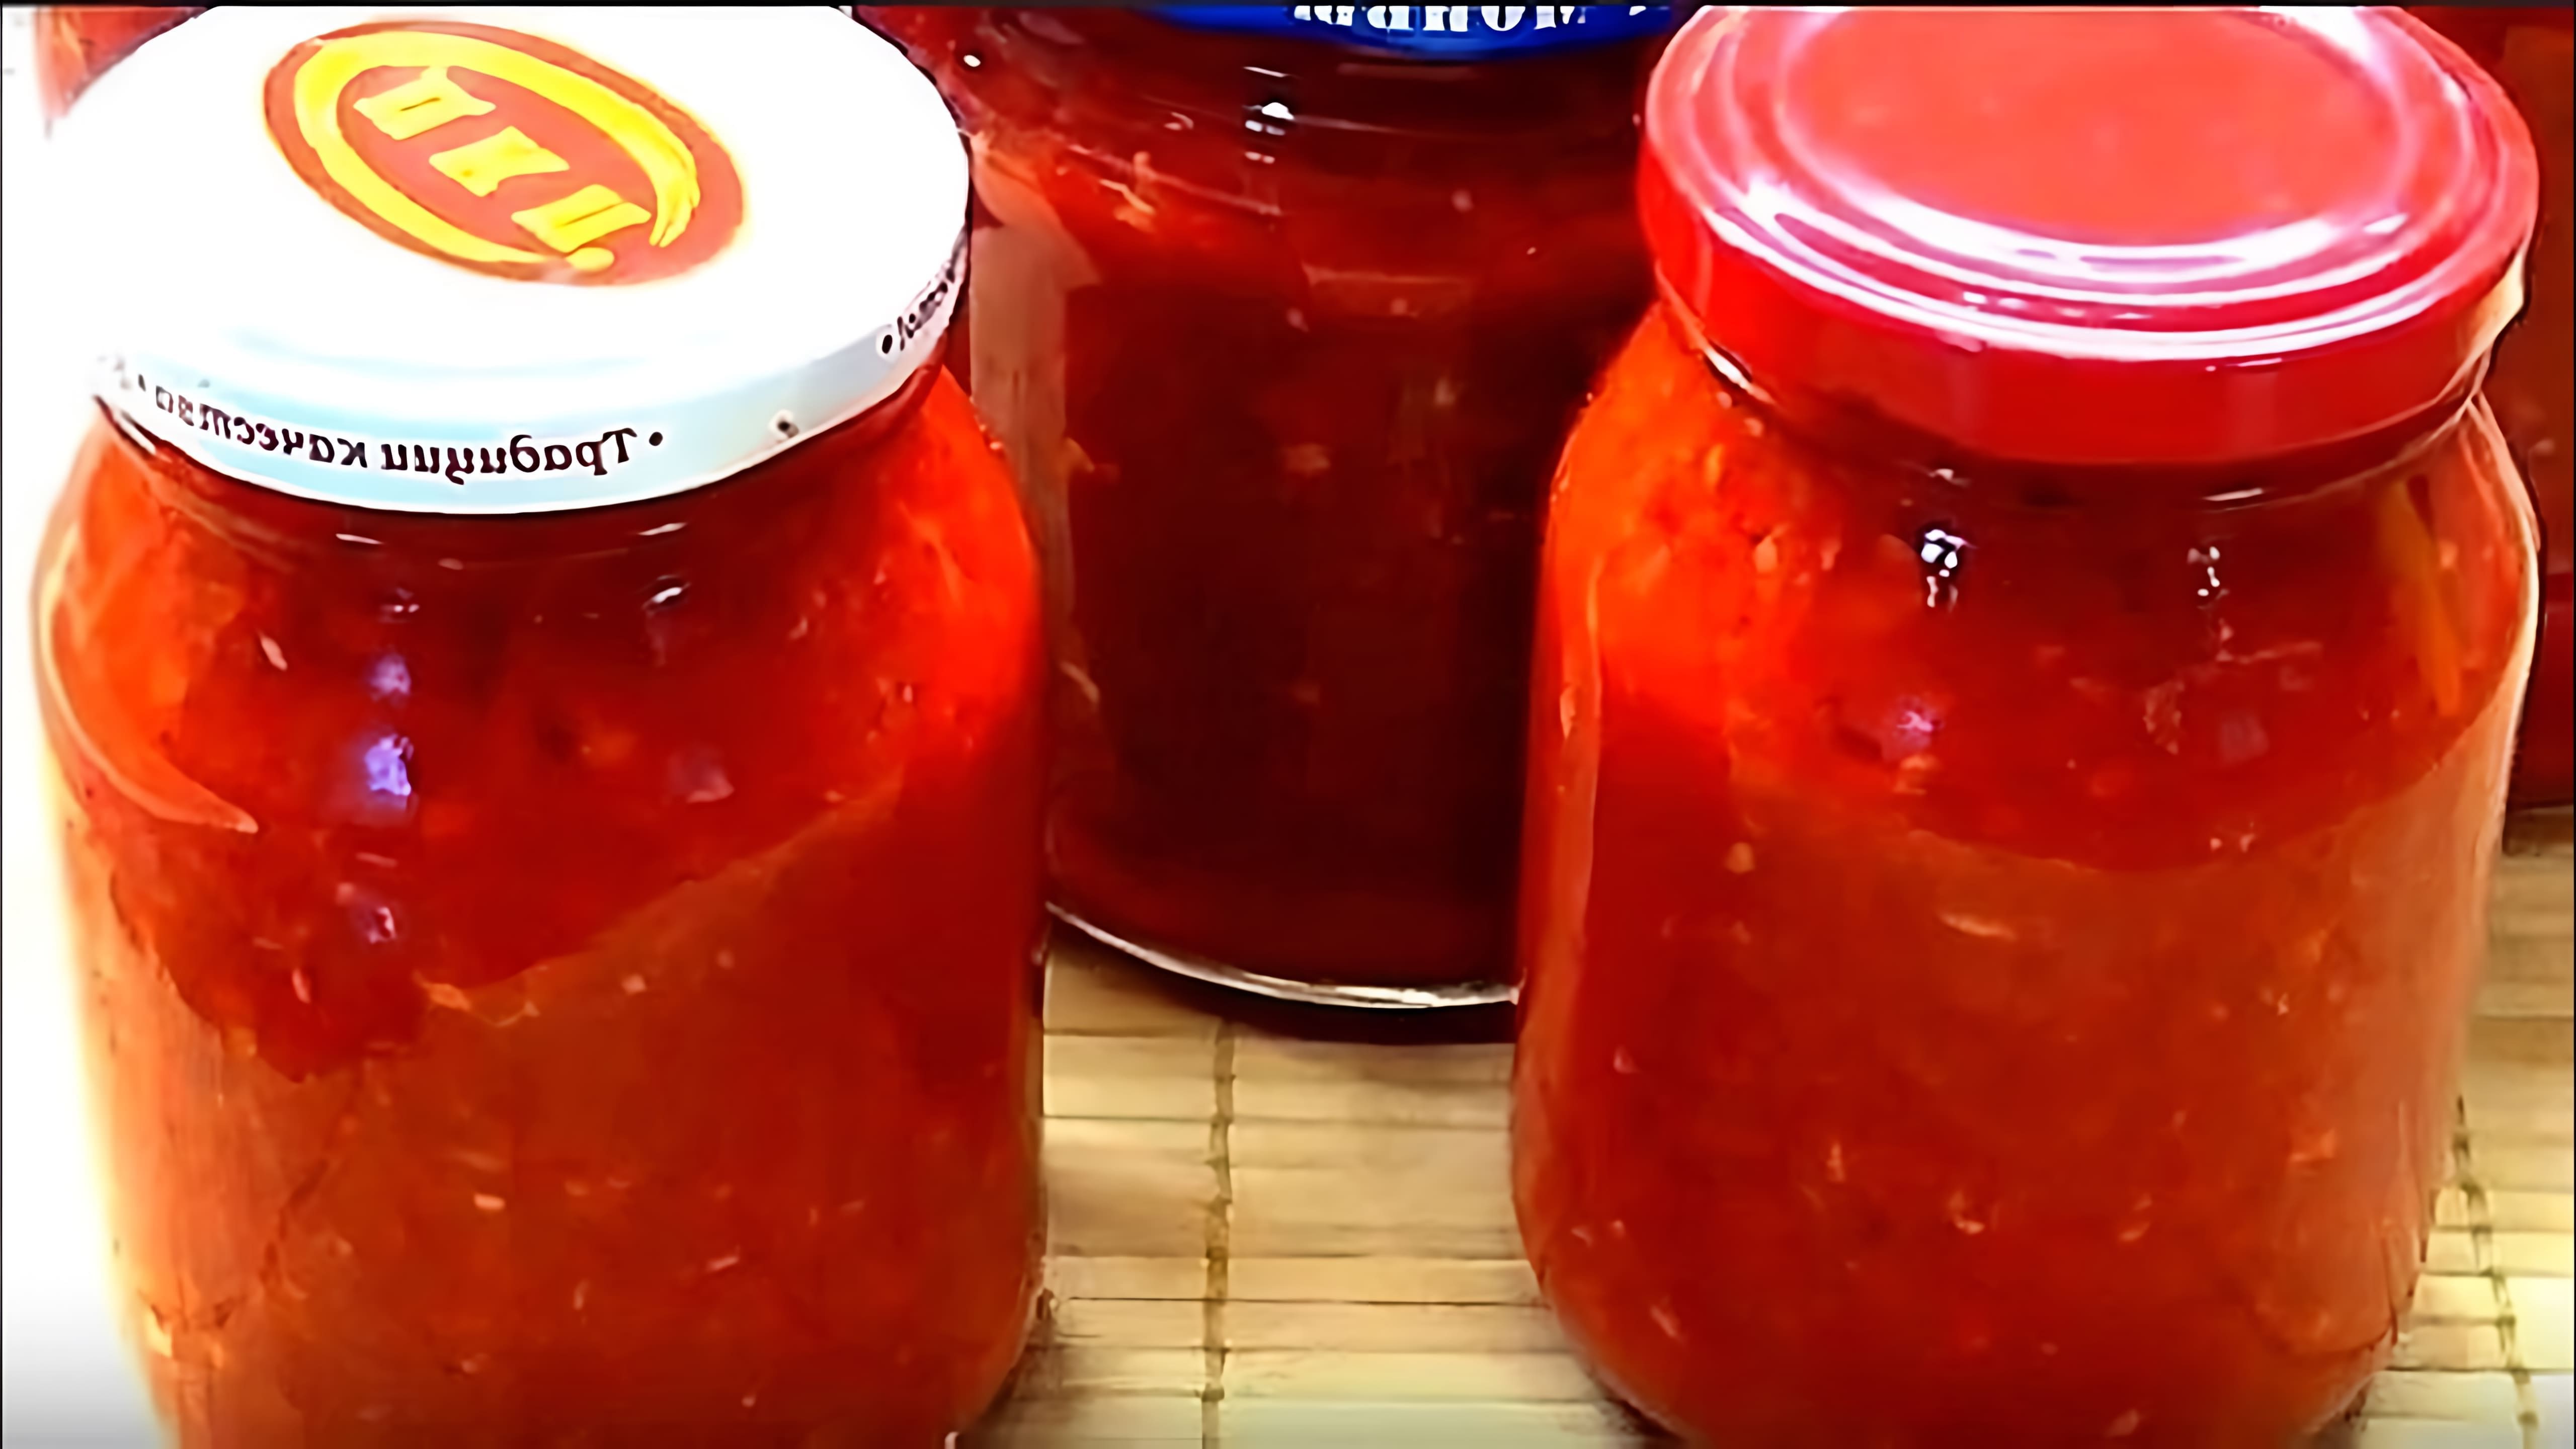 Видео посвящено приготовлению аджики, острой грузинской соуса